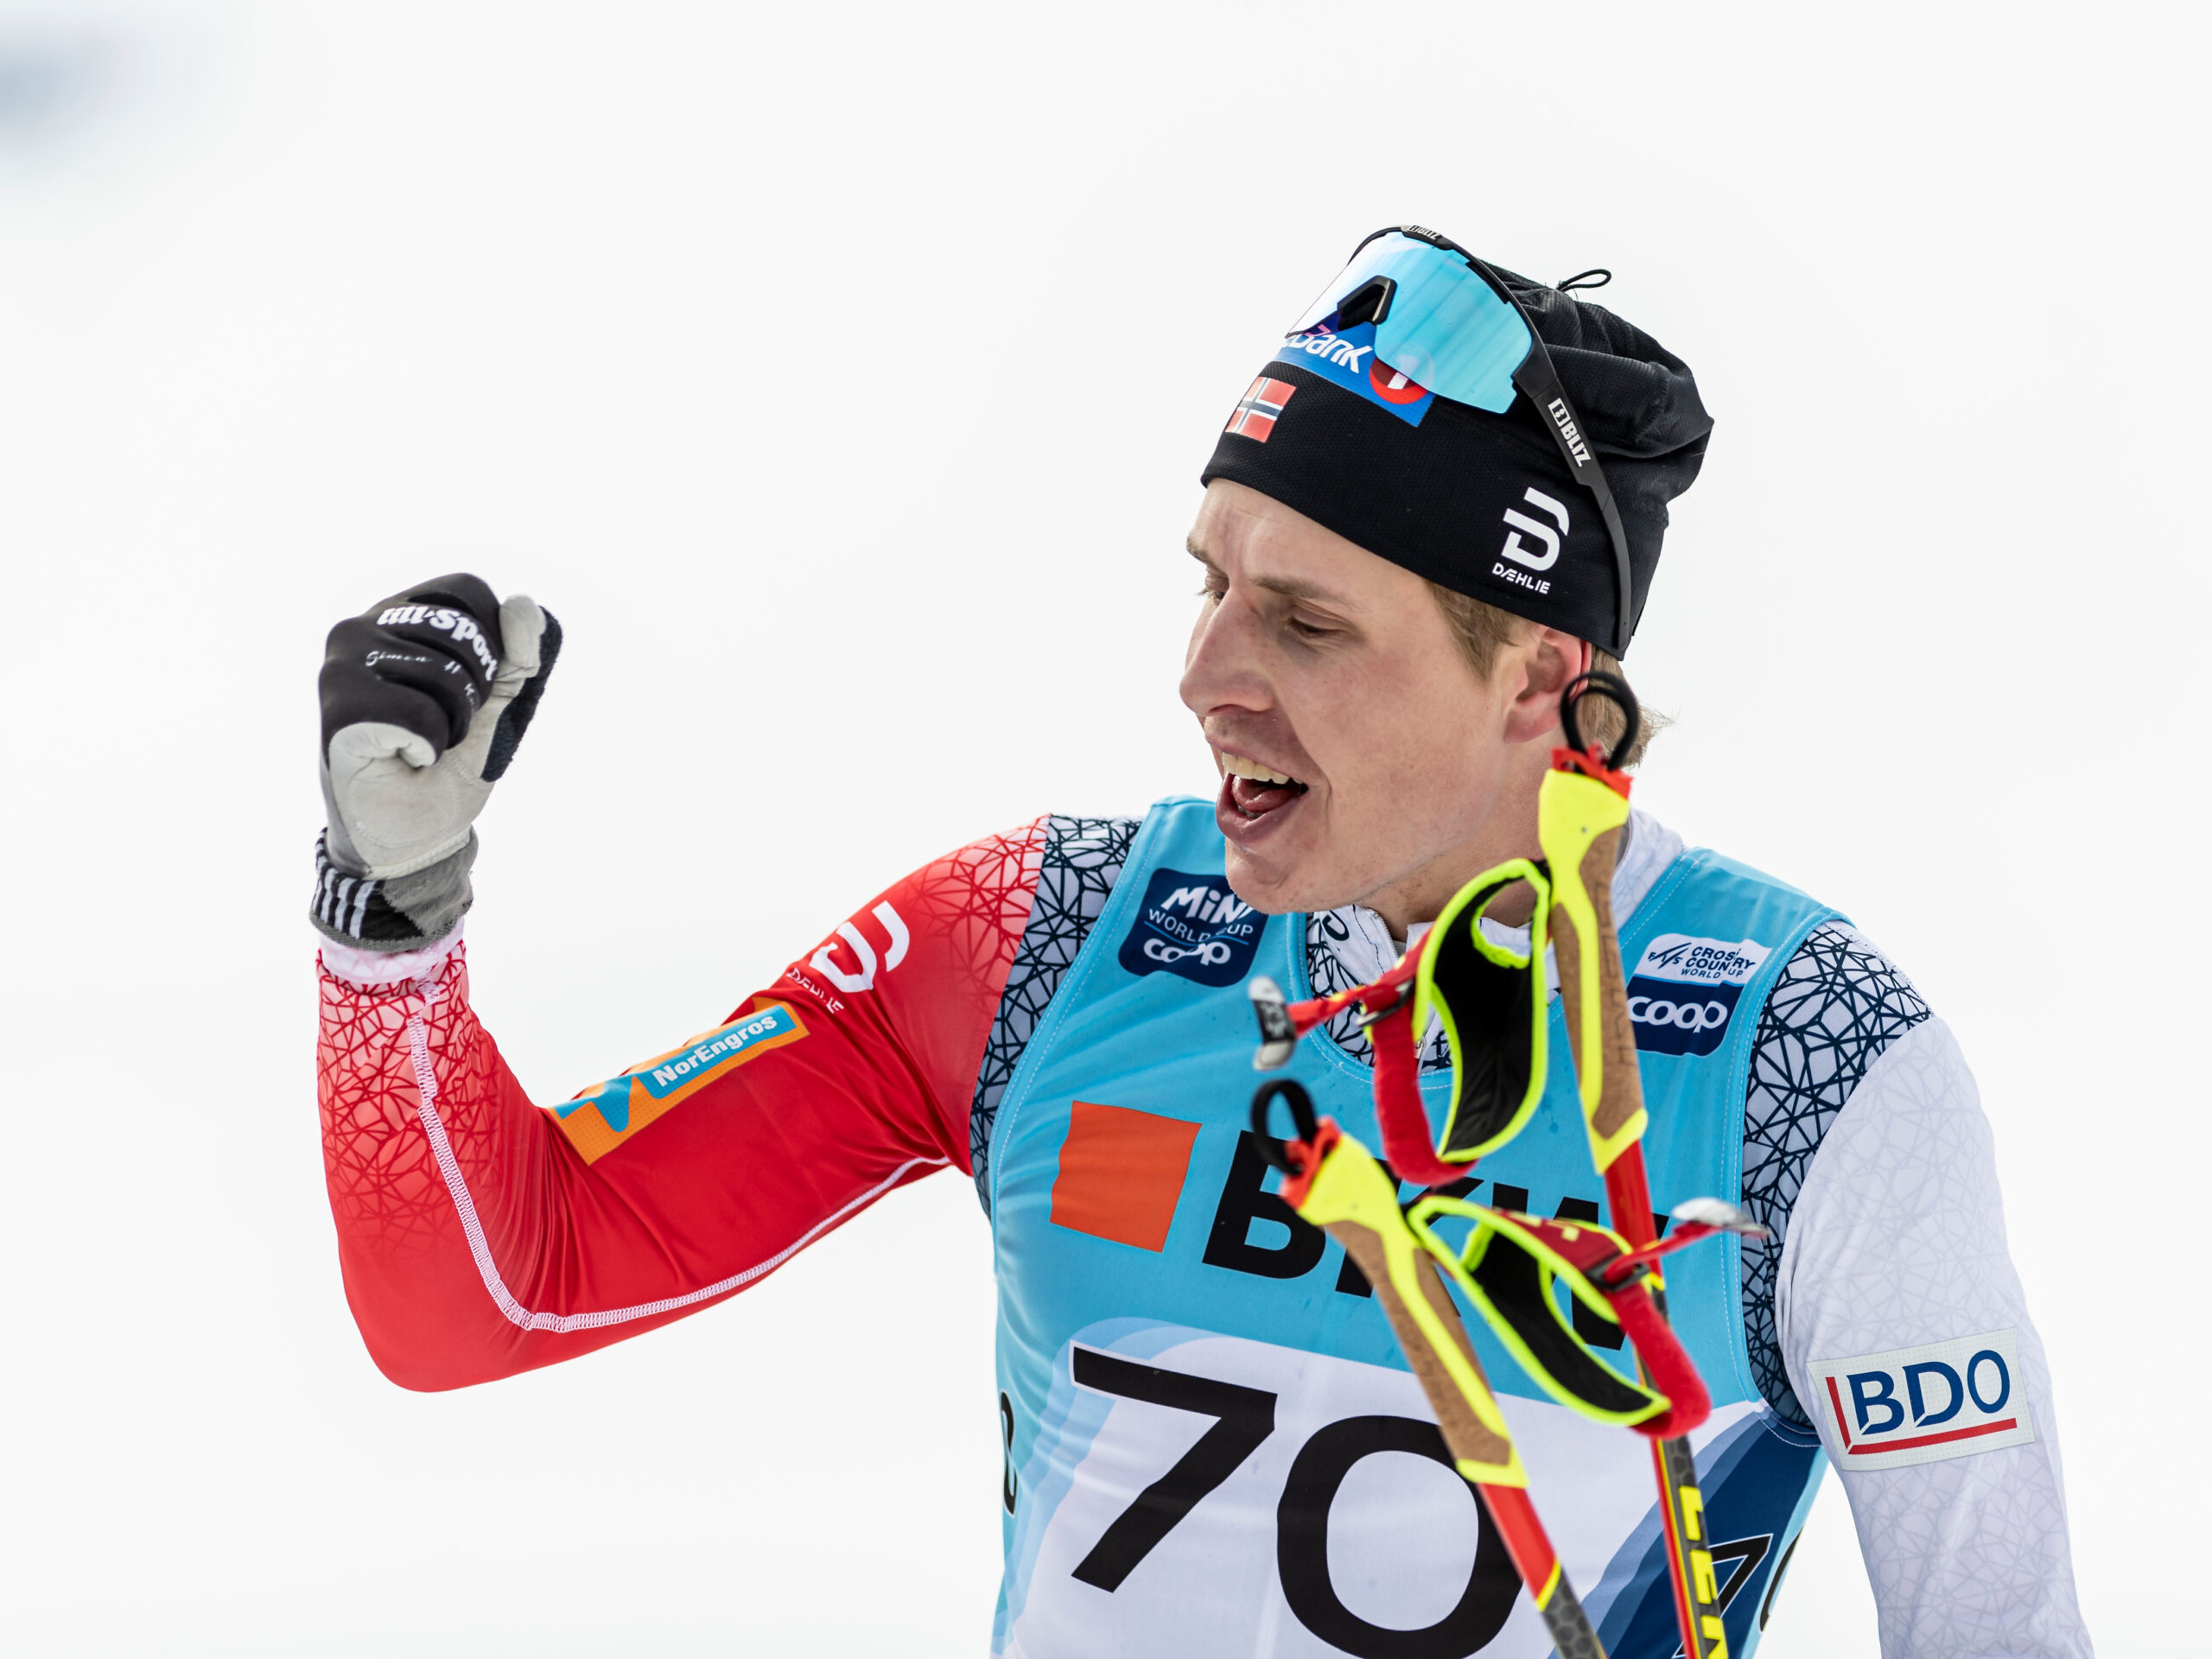 Simen Hegstad Kruger, Norwegian championships, Pro cross-country skiing, 2560x1920 HD Desktop